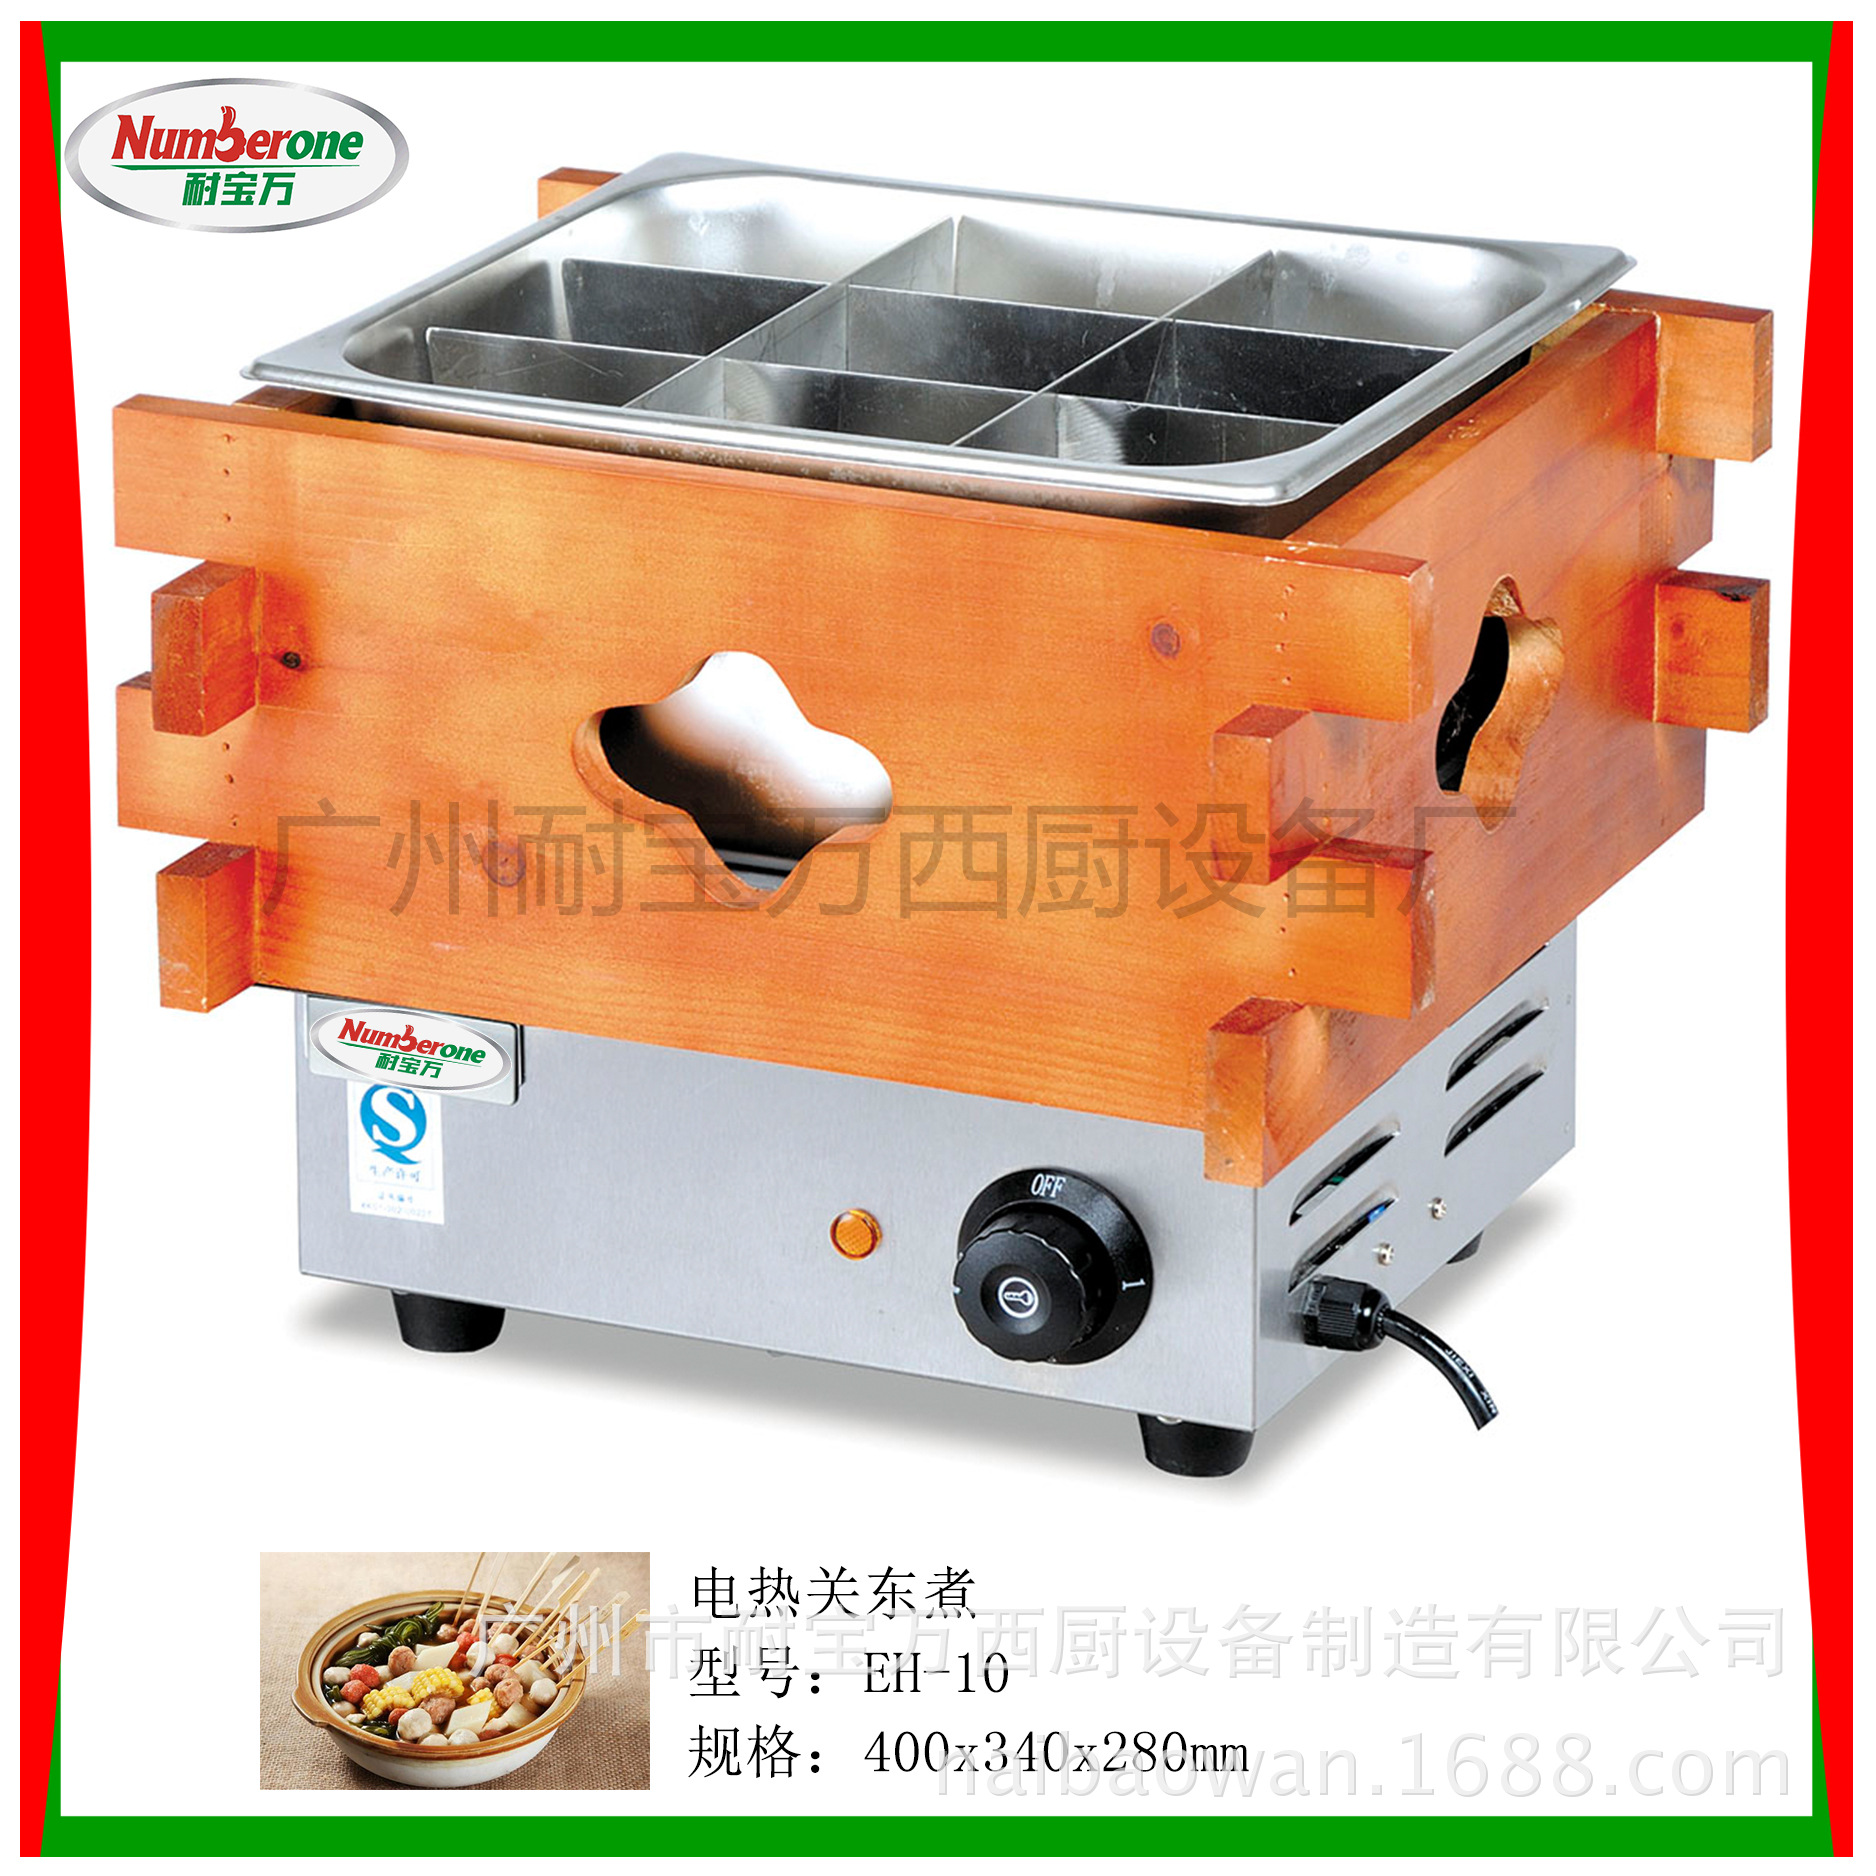 食品保温柜EH-450 商用台式蒸包机 便利速食店蒸包机